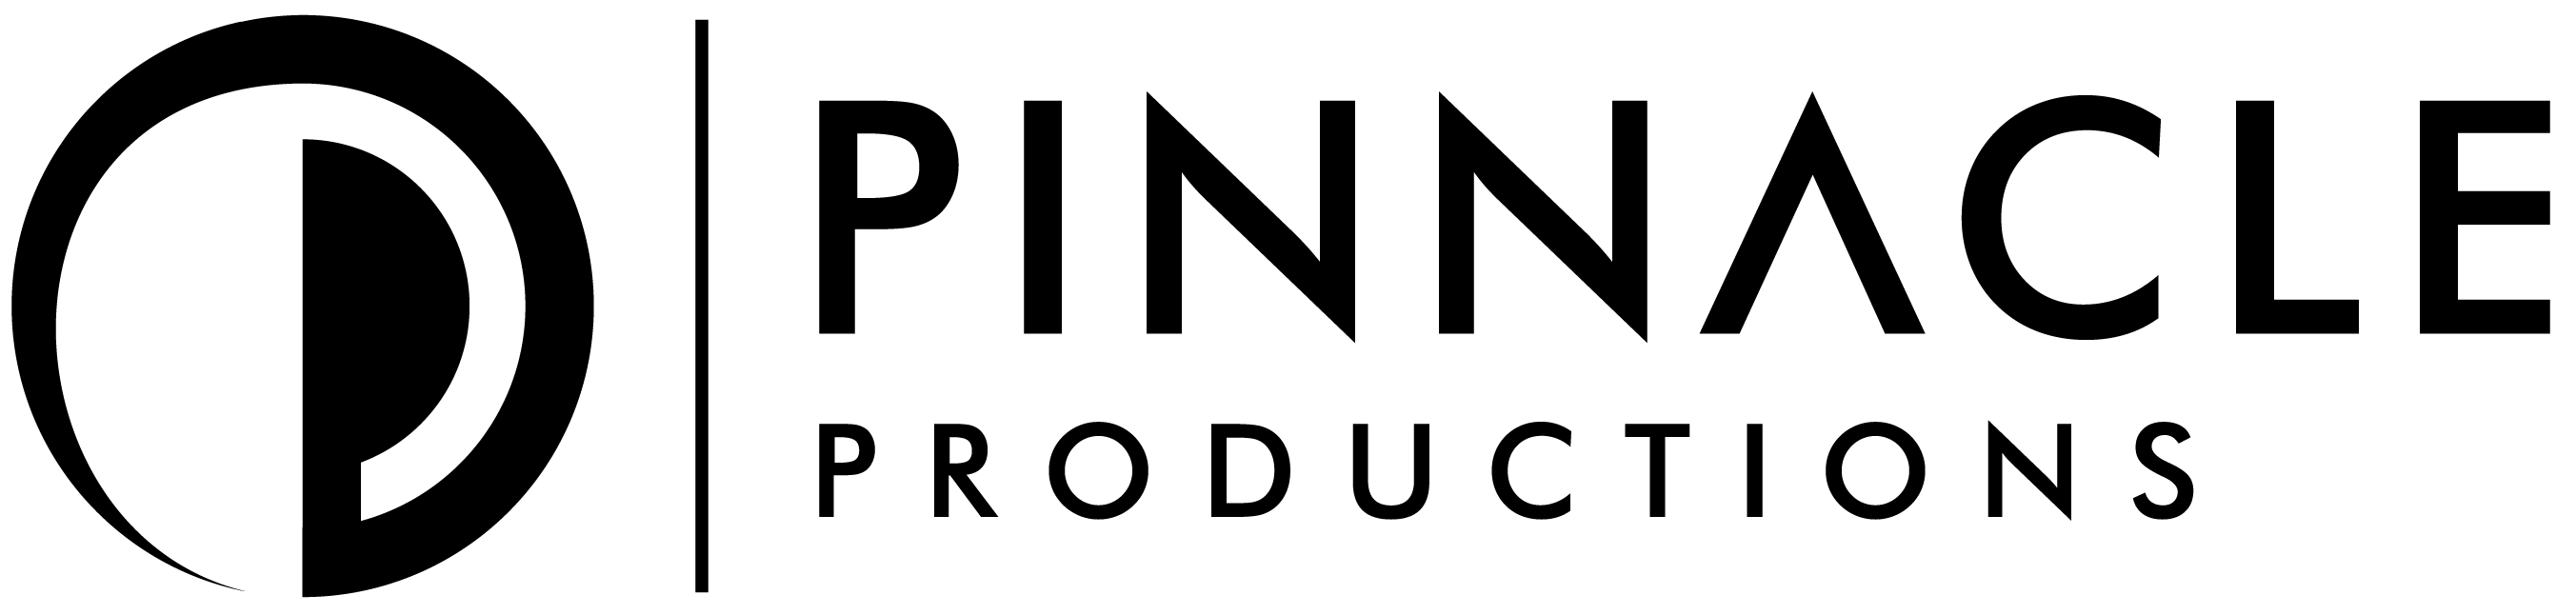 Pinnacle Logo - Horizontal Black (2)